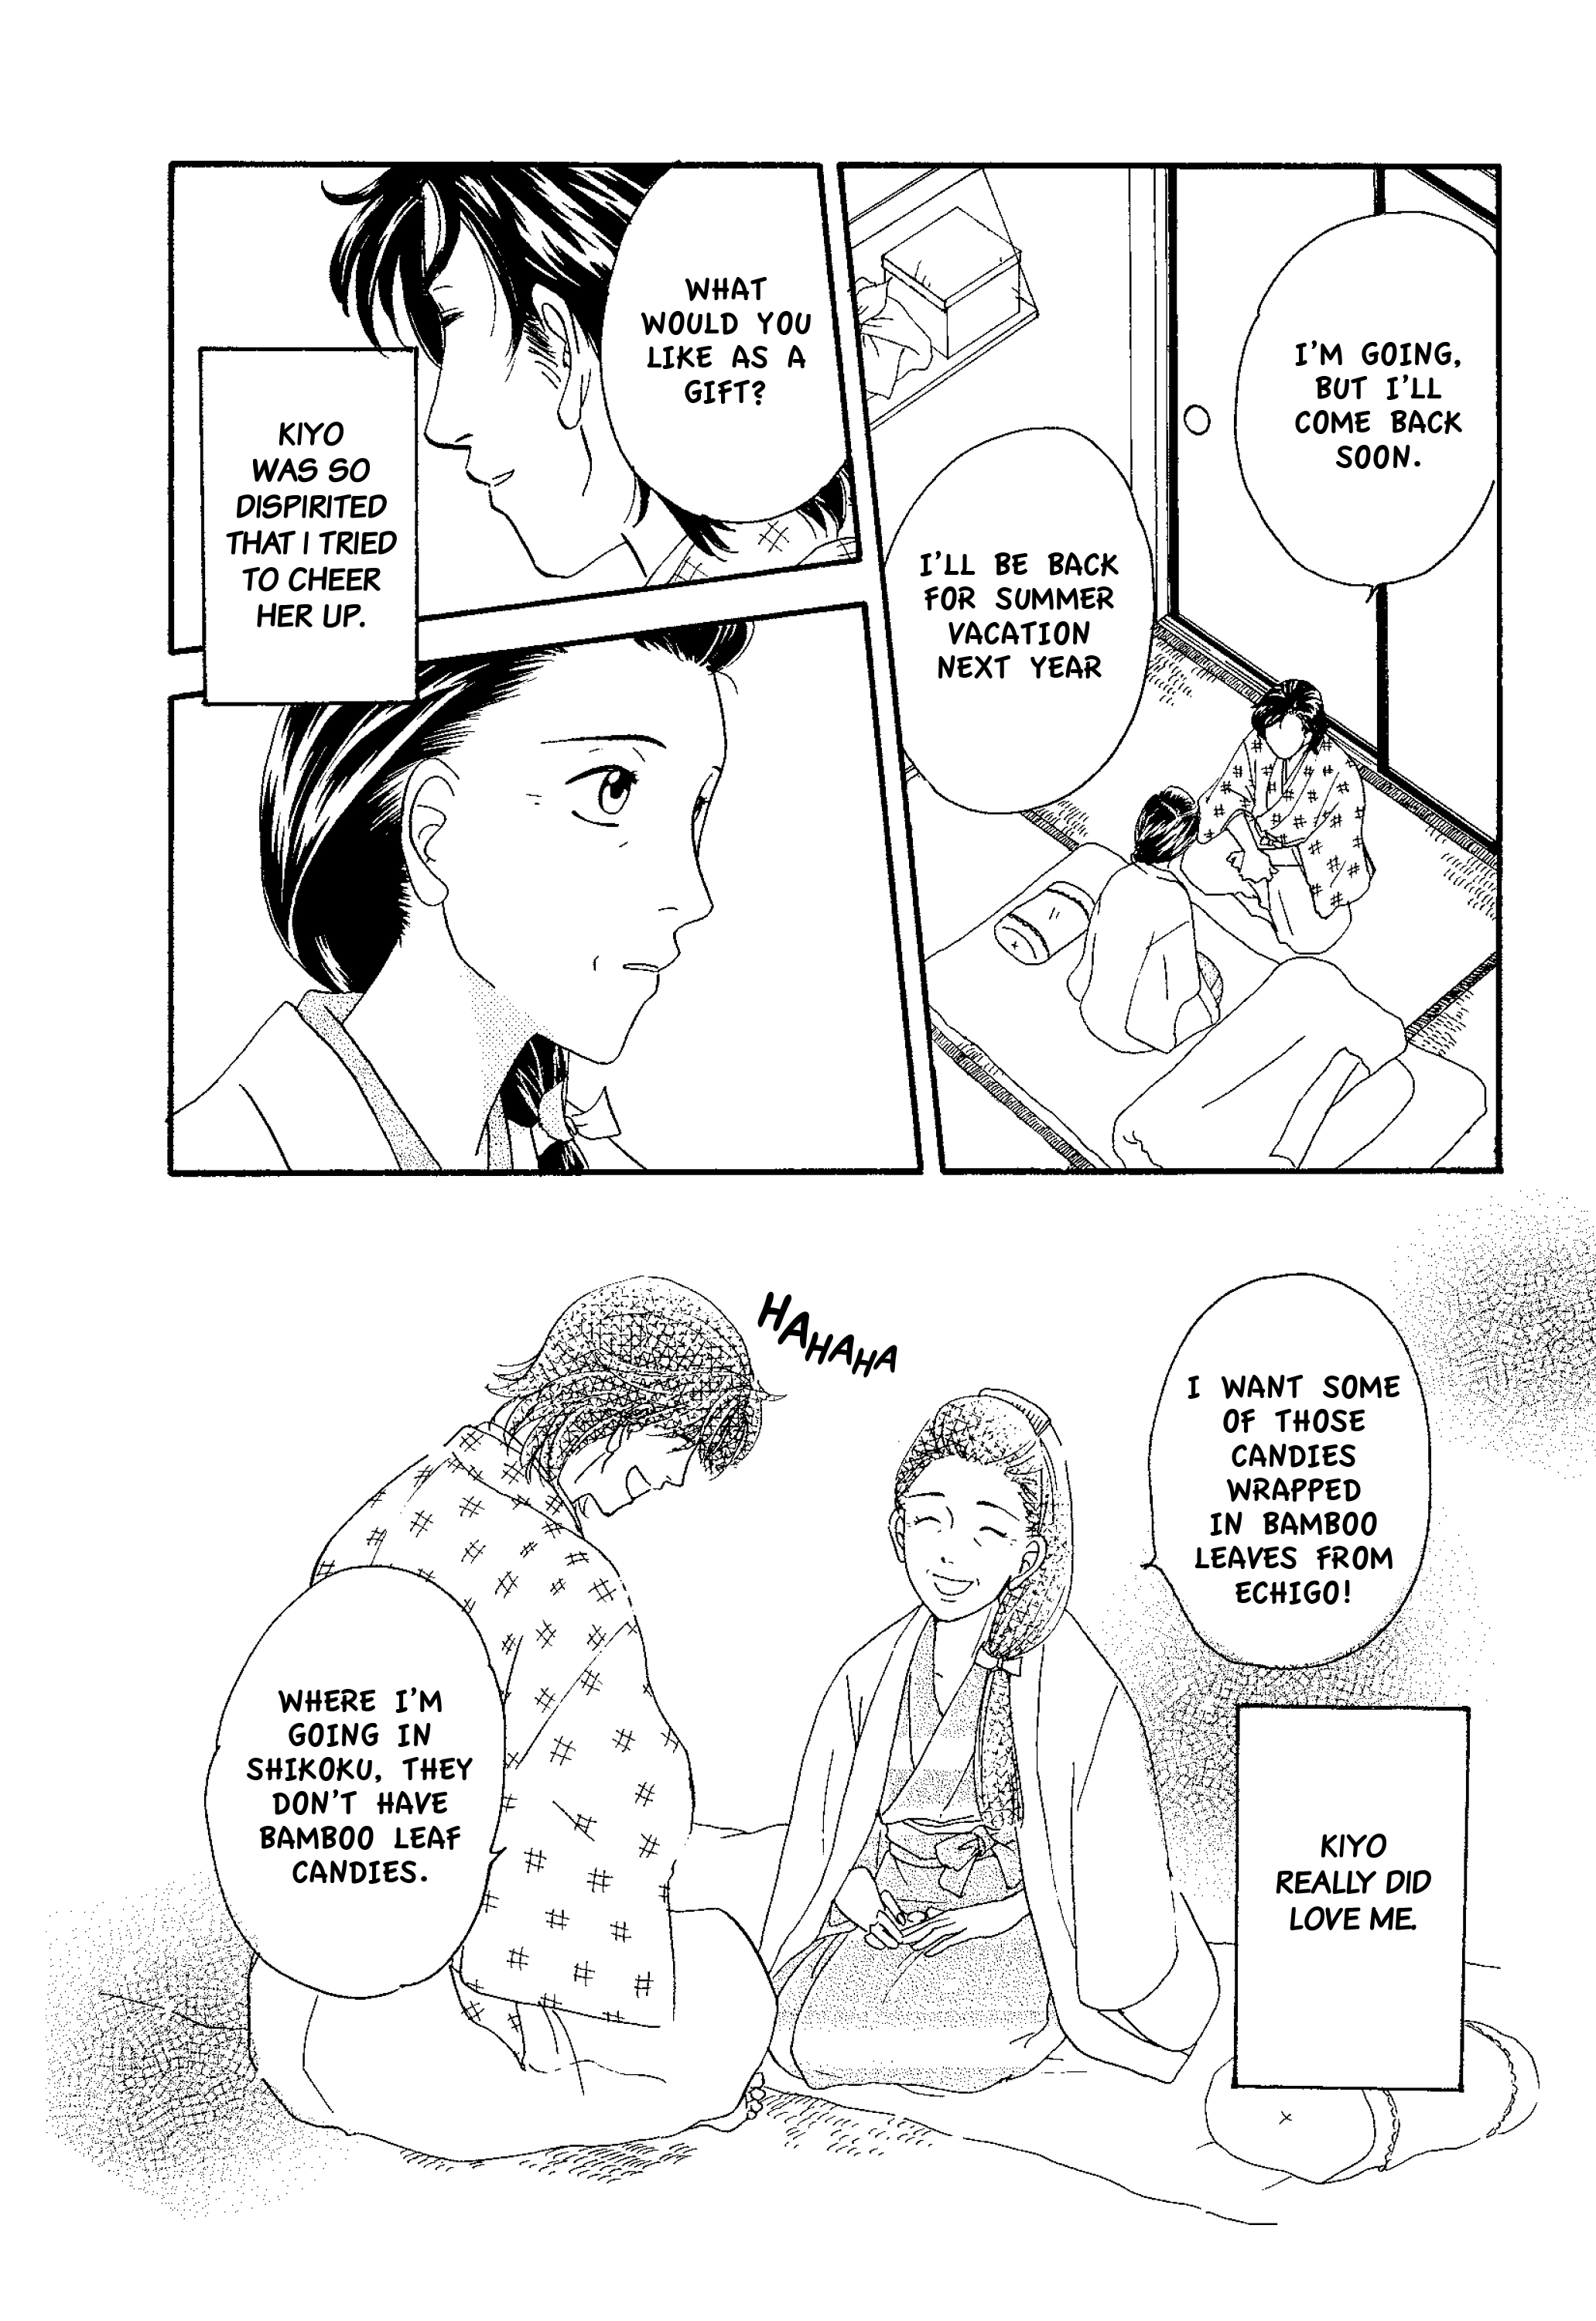 Soseki Natsume's Botchan: The Manga Edition